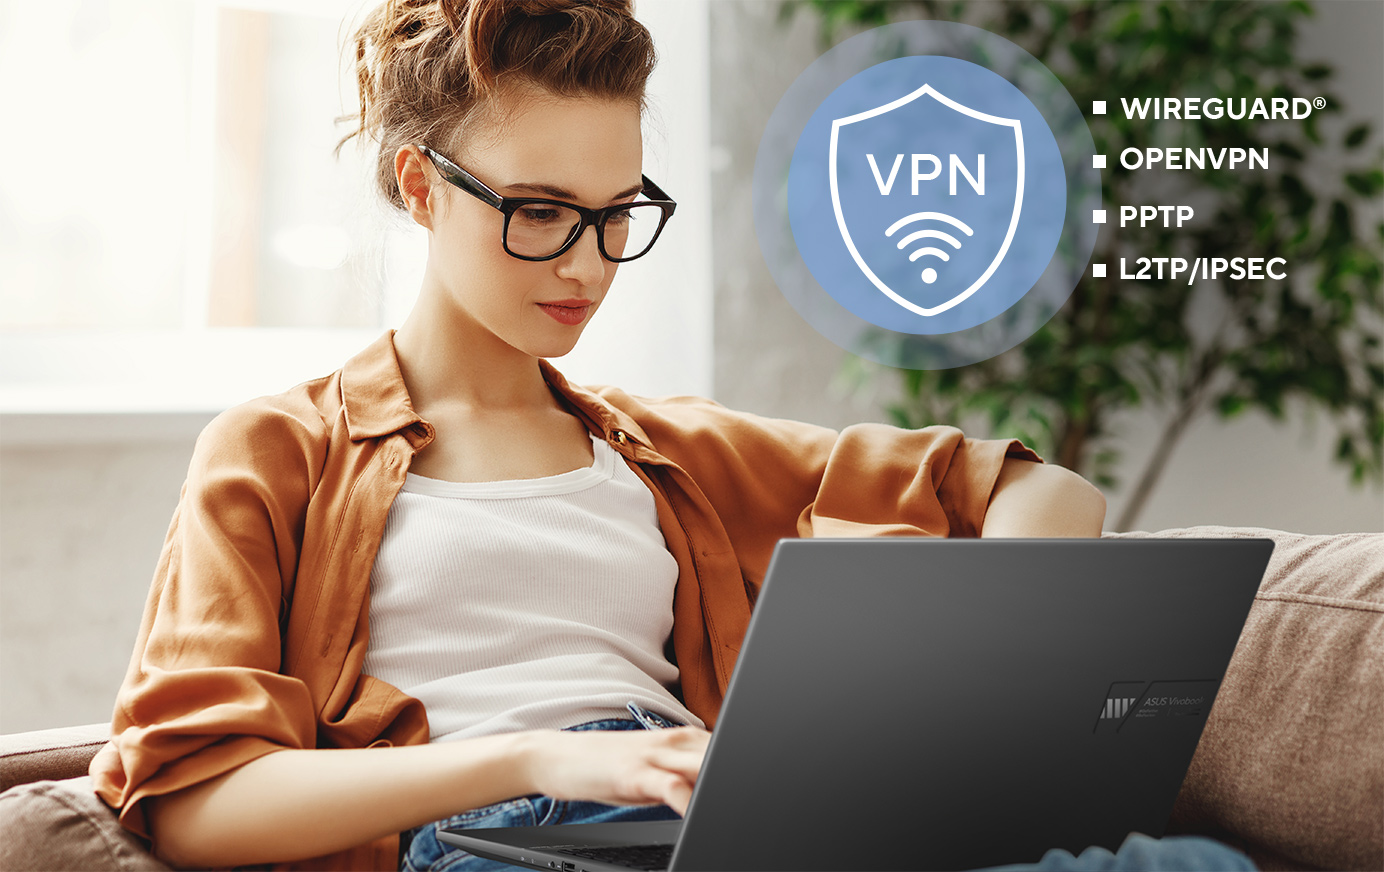 ASUS-Router unterstützen eine Reihe von VPN-Sicherheitsprotokollen, darunter WireGuard®, OpenVPN, PPTP und L2TP/IPSec.